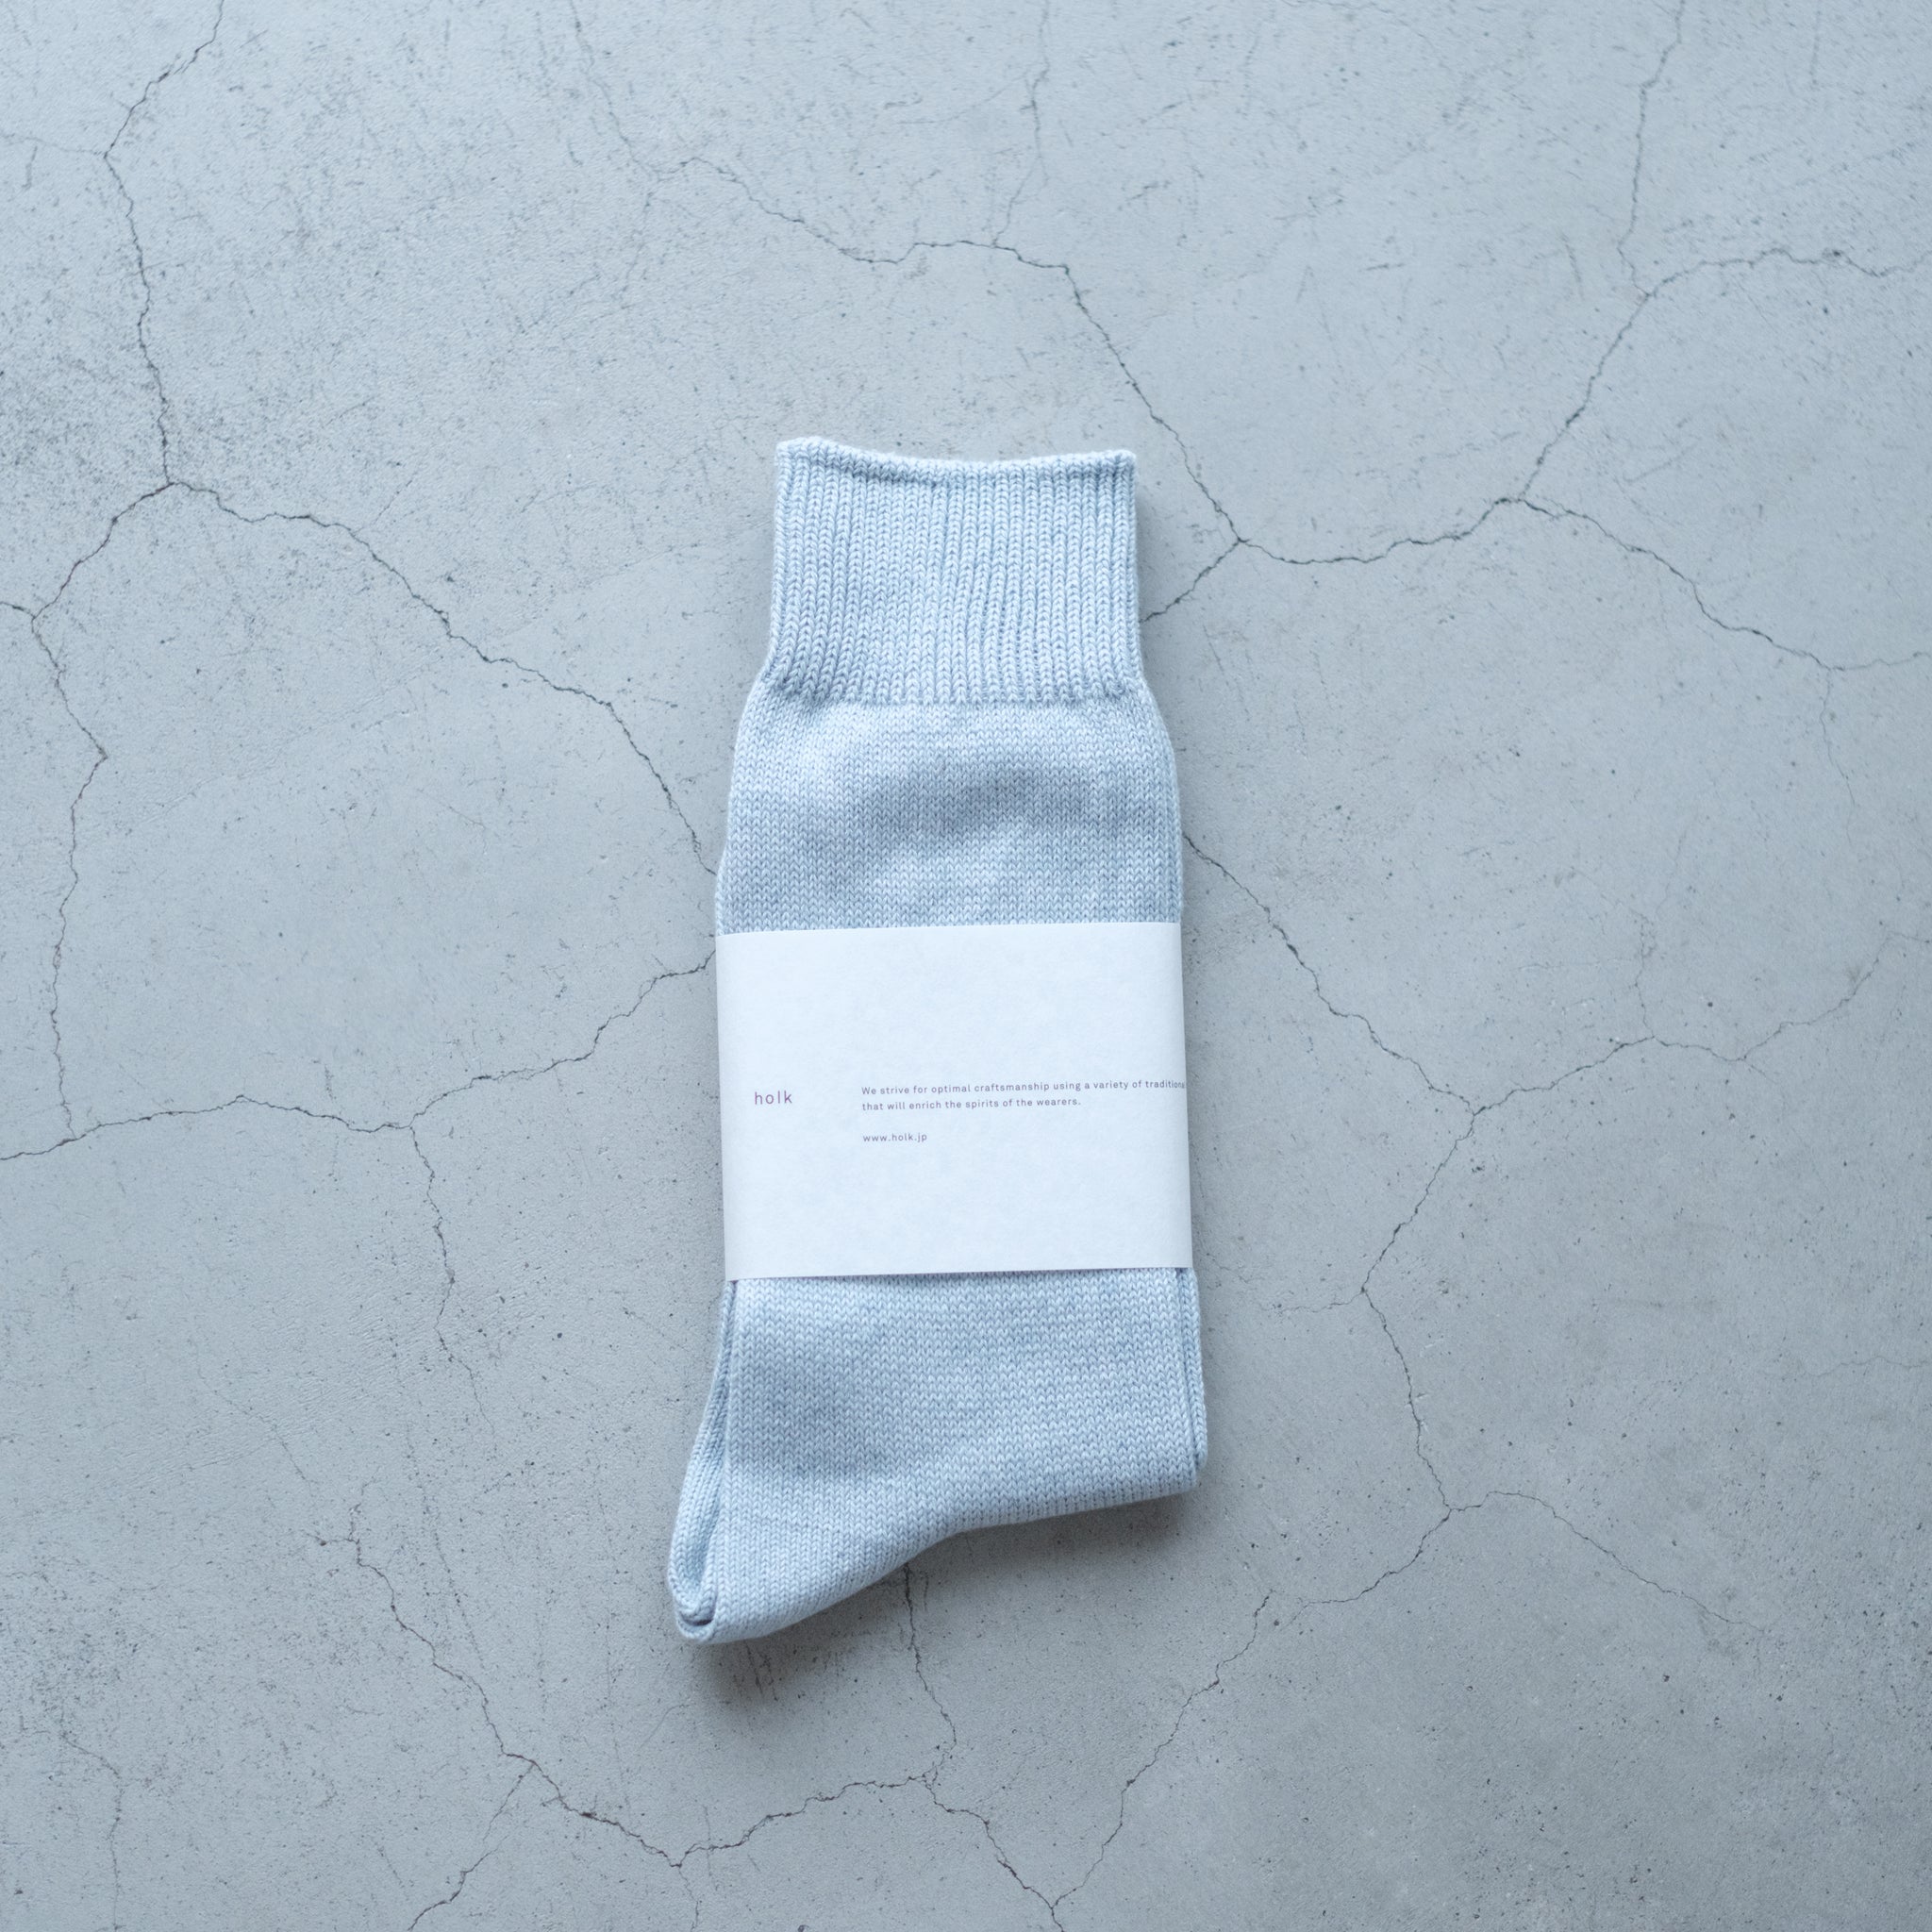 holk｜028 socks